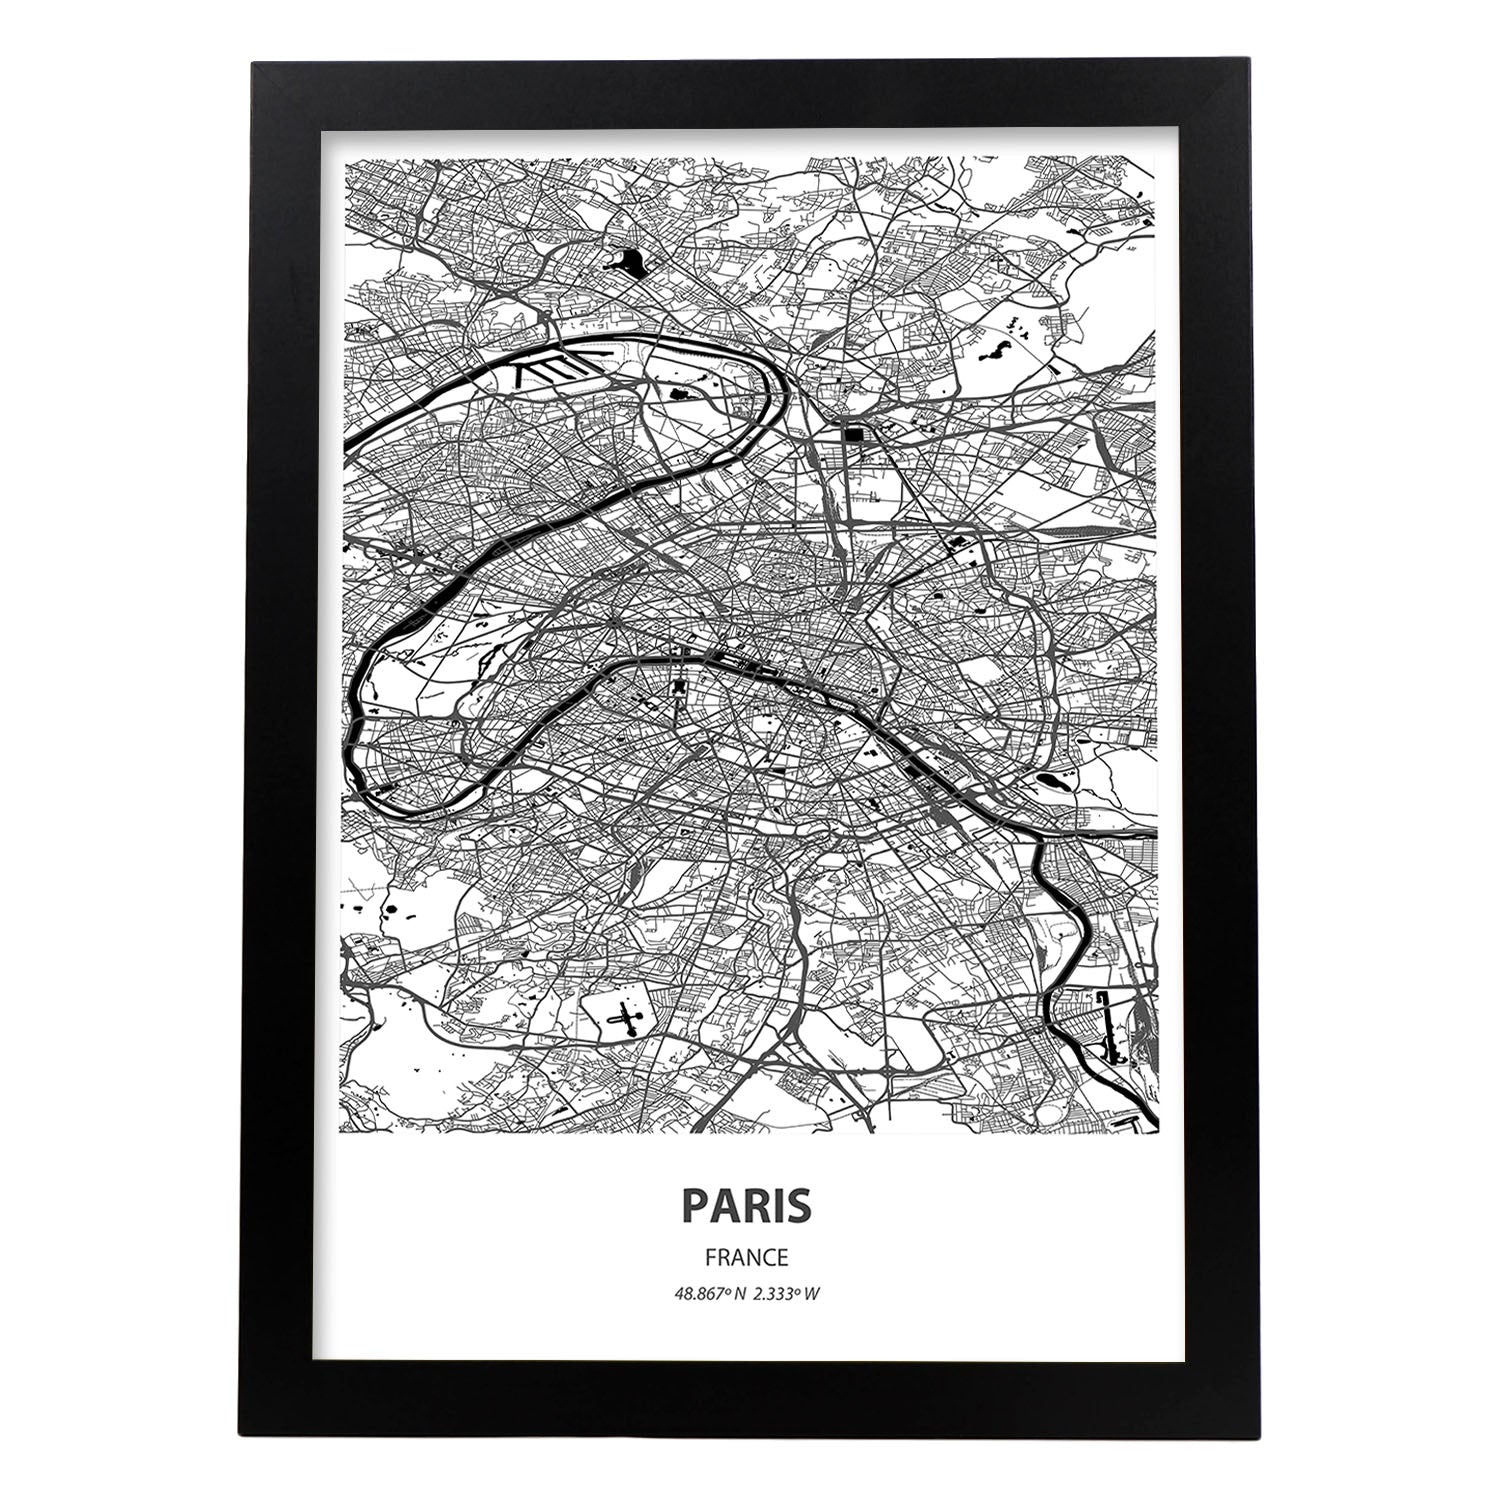 Poster con mapa de Paris - Francia. Láminas de ciudades de Francia con mares y ríos en color negro.-Artwork-Nacnic-A3-Marco Negro-Nacnic Estudio SL